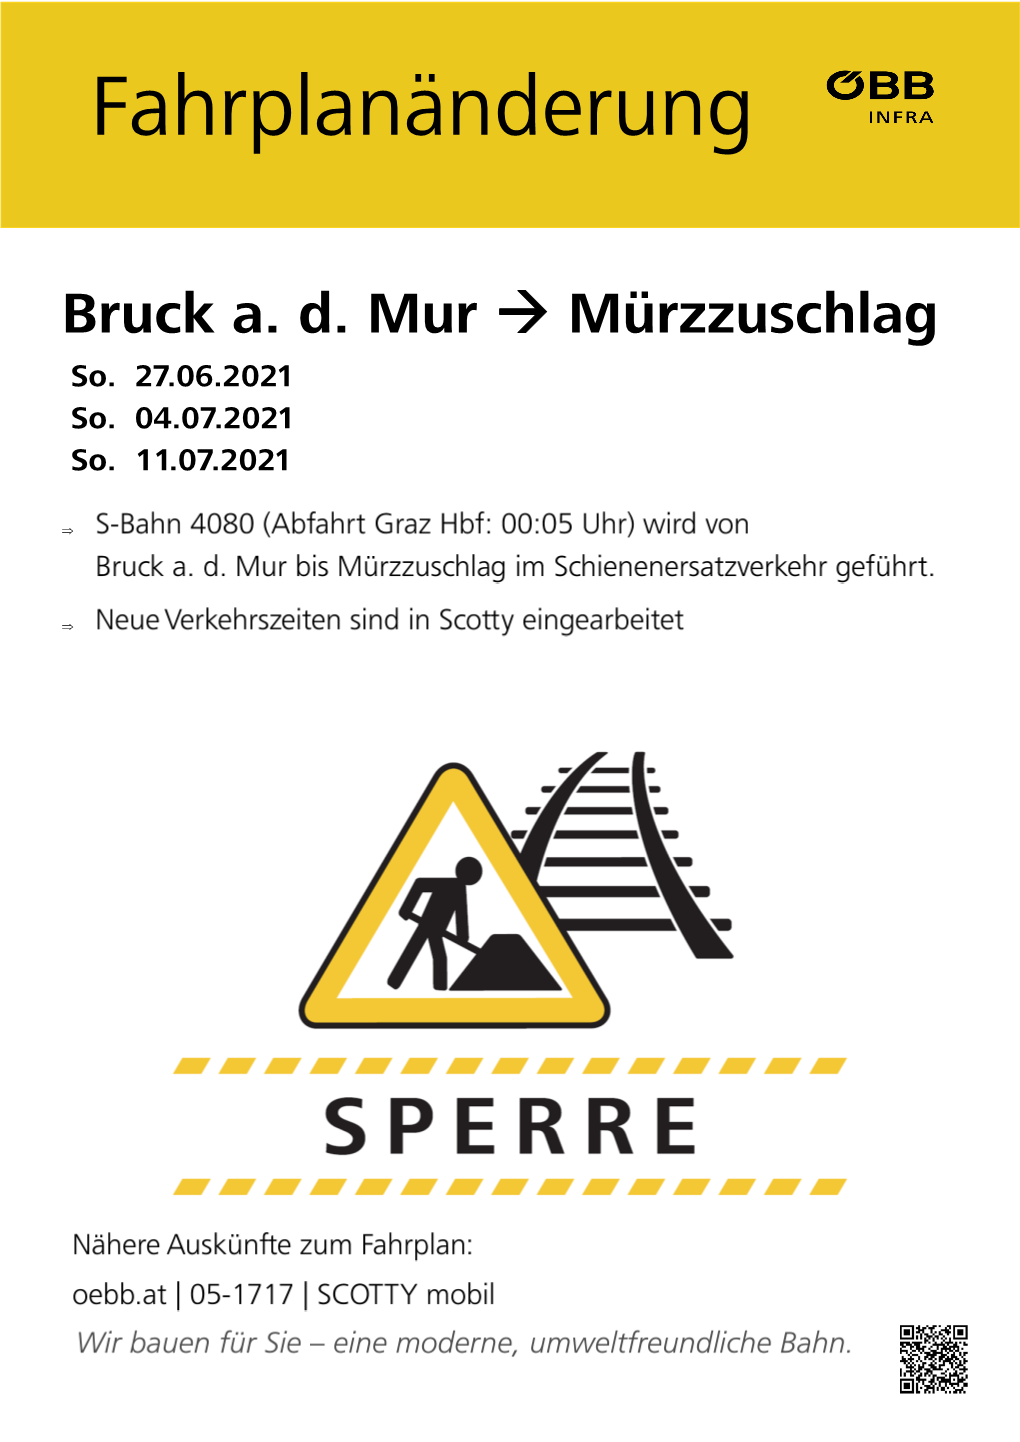 Bruck A. D. Mur → Mürzzuschlag